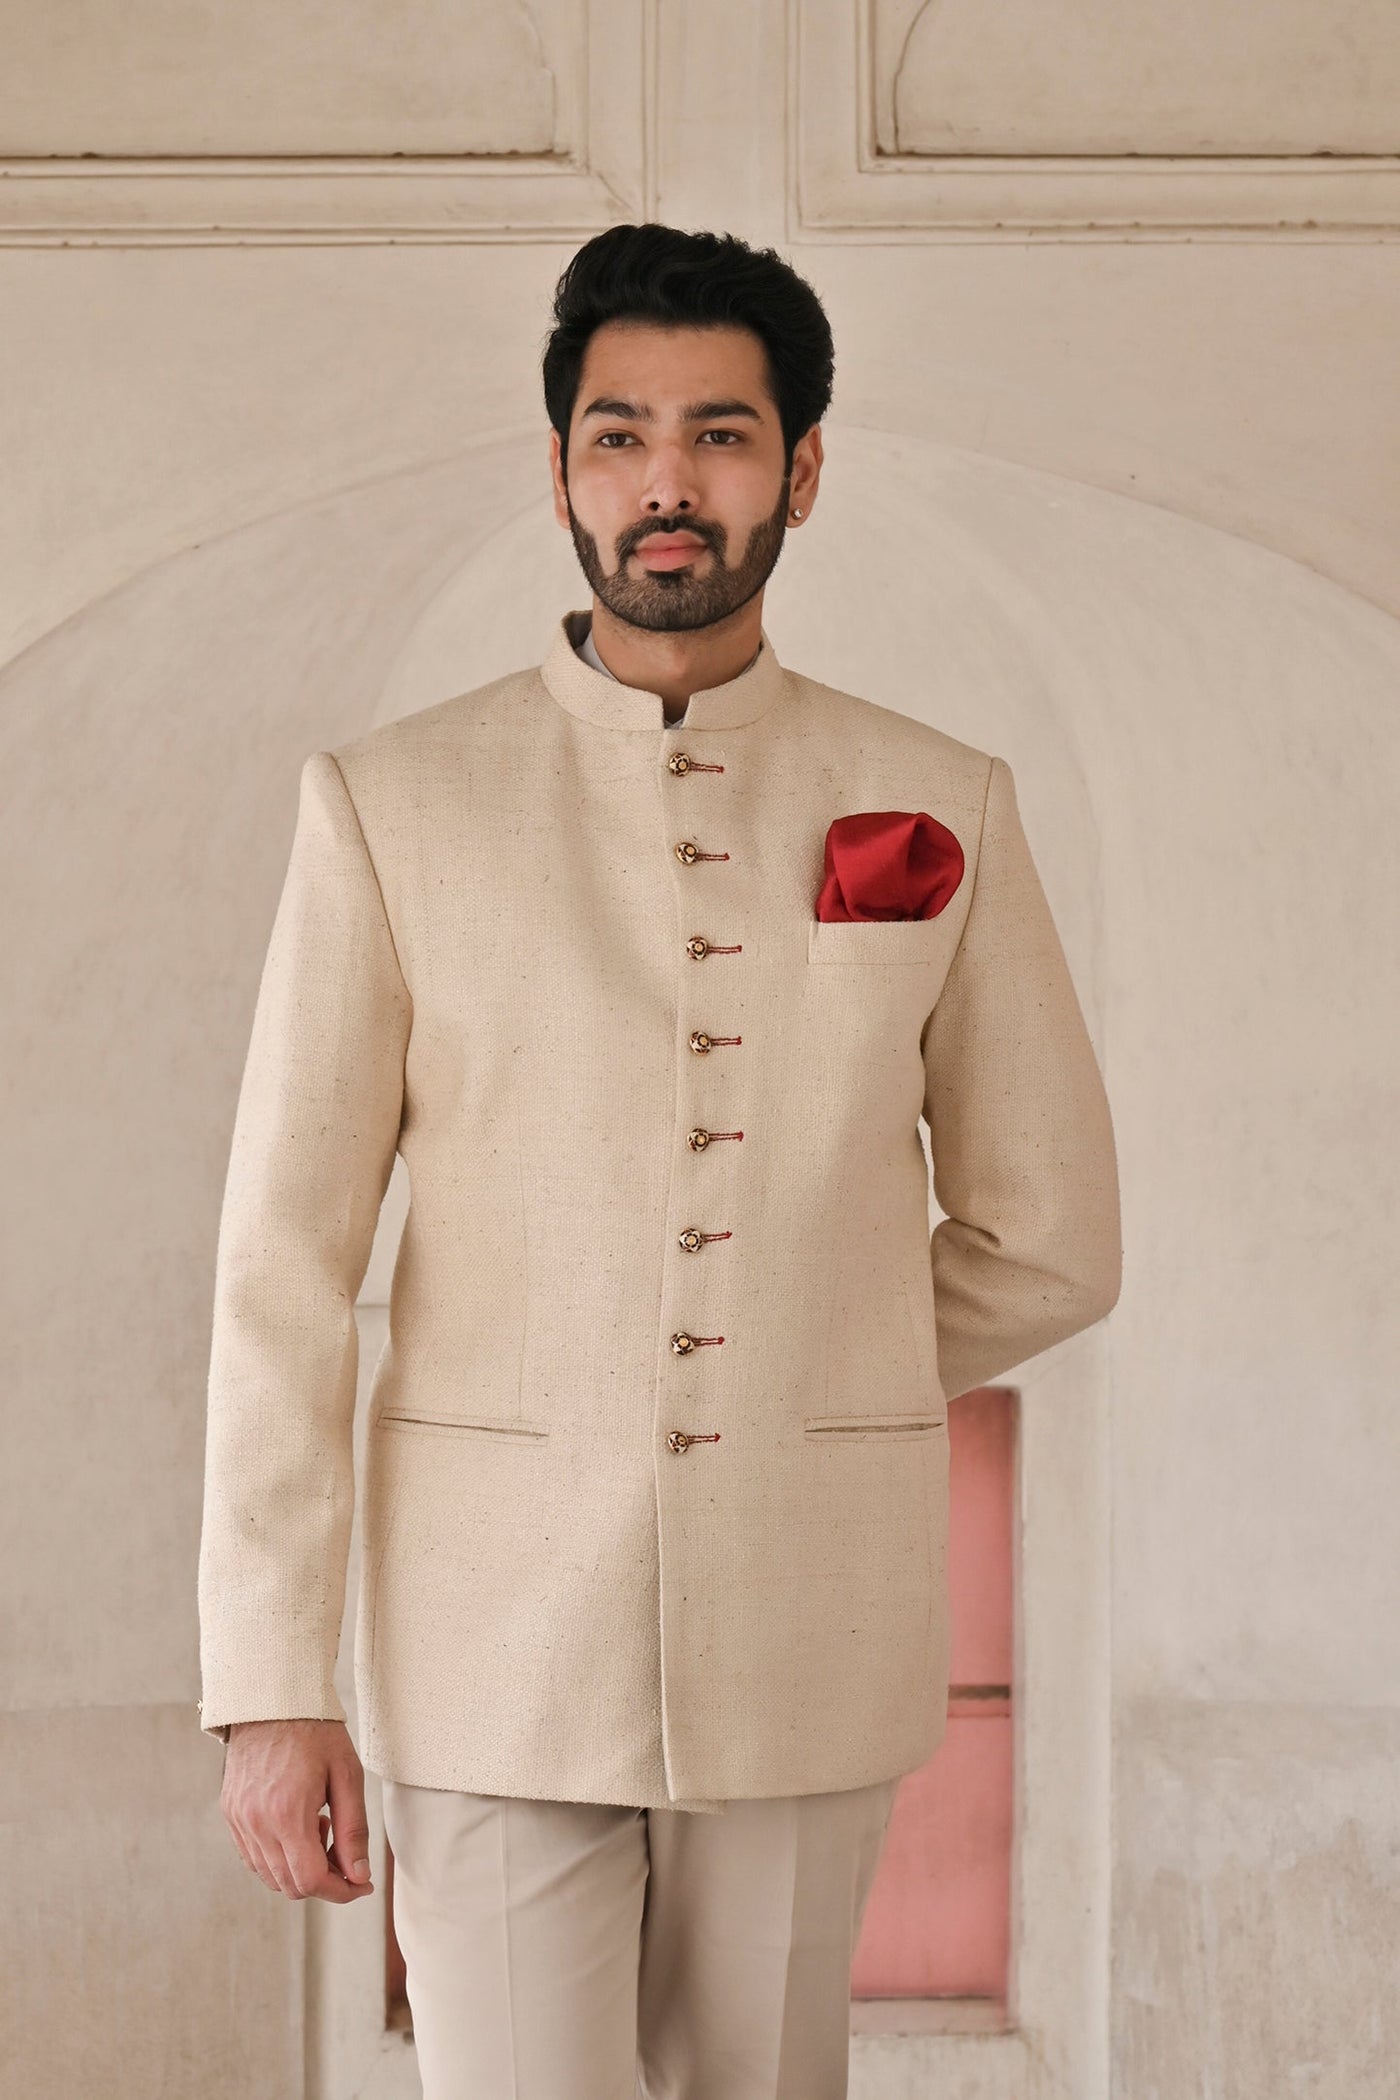 Men's Bandhgala suit in Indian designer beige cotton